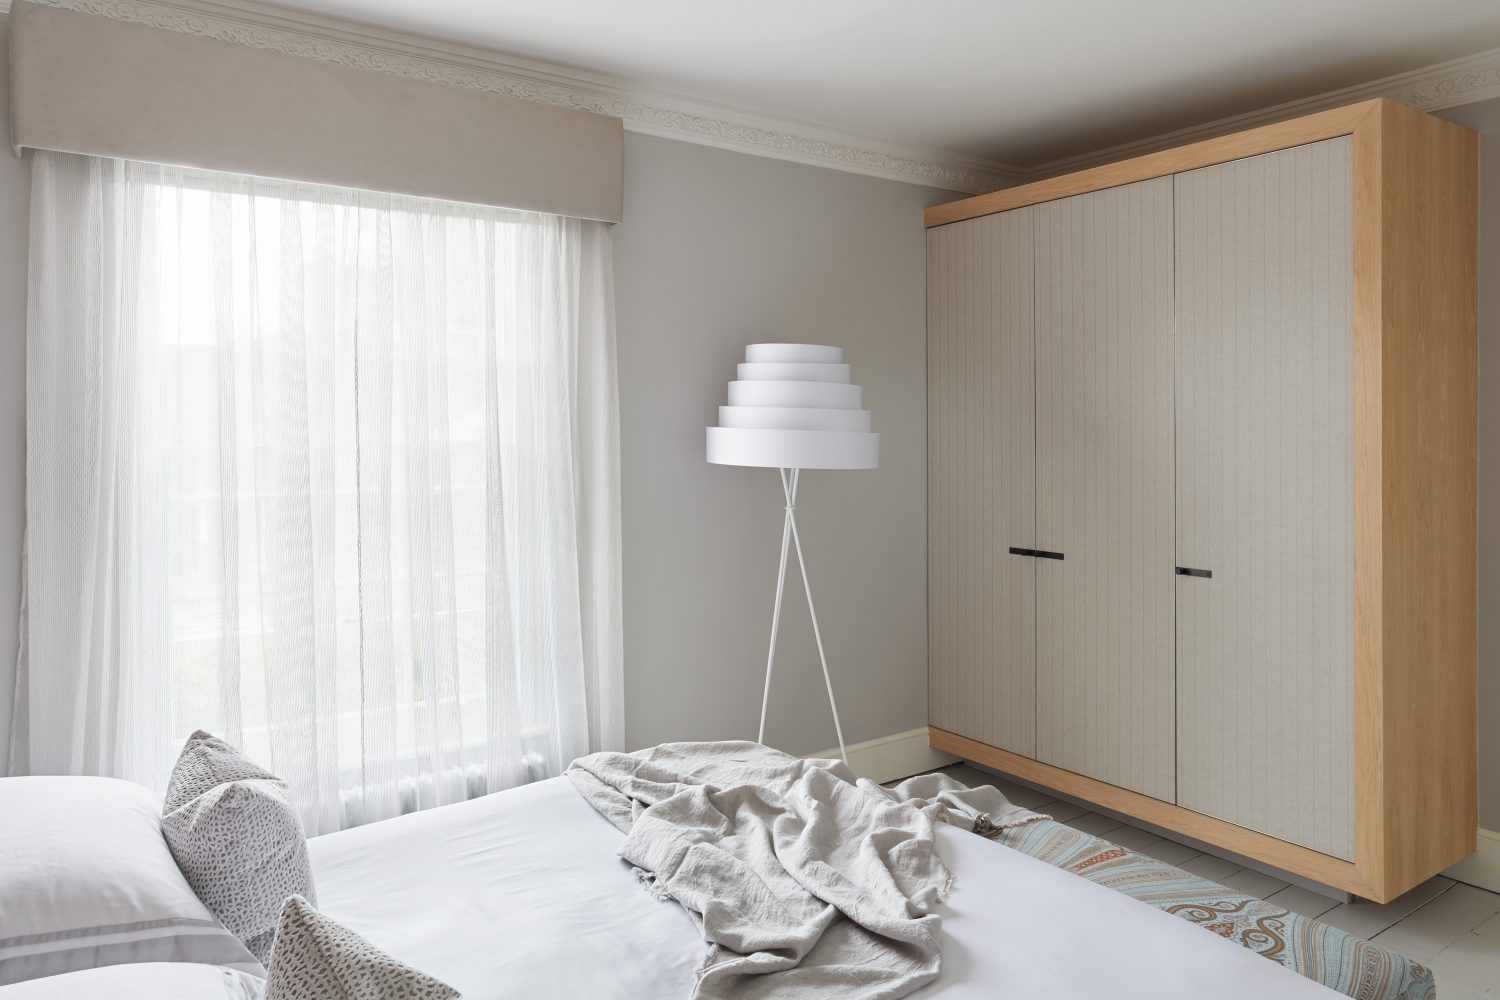 Happy House by Daniel Hopwood – calming bedroom design. Eclectic design